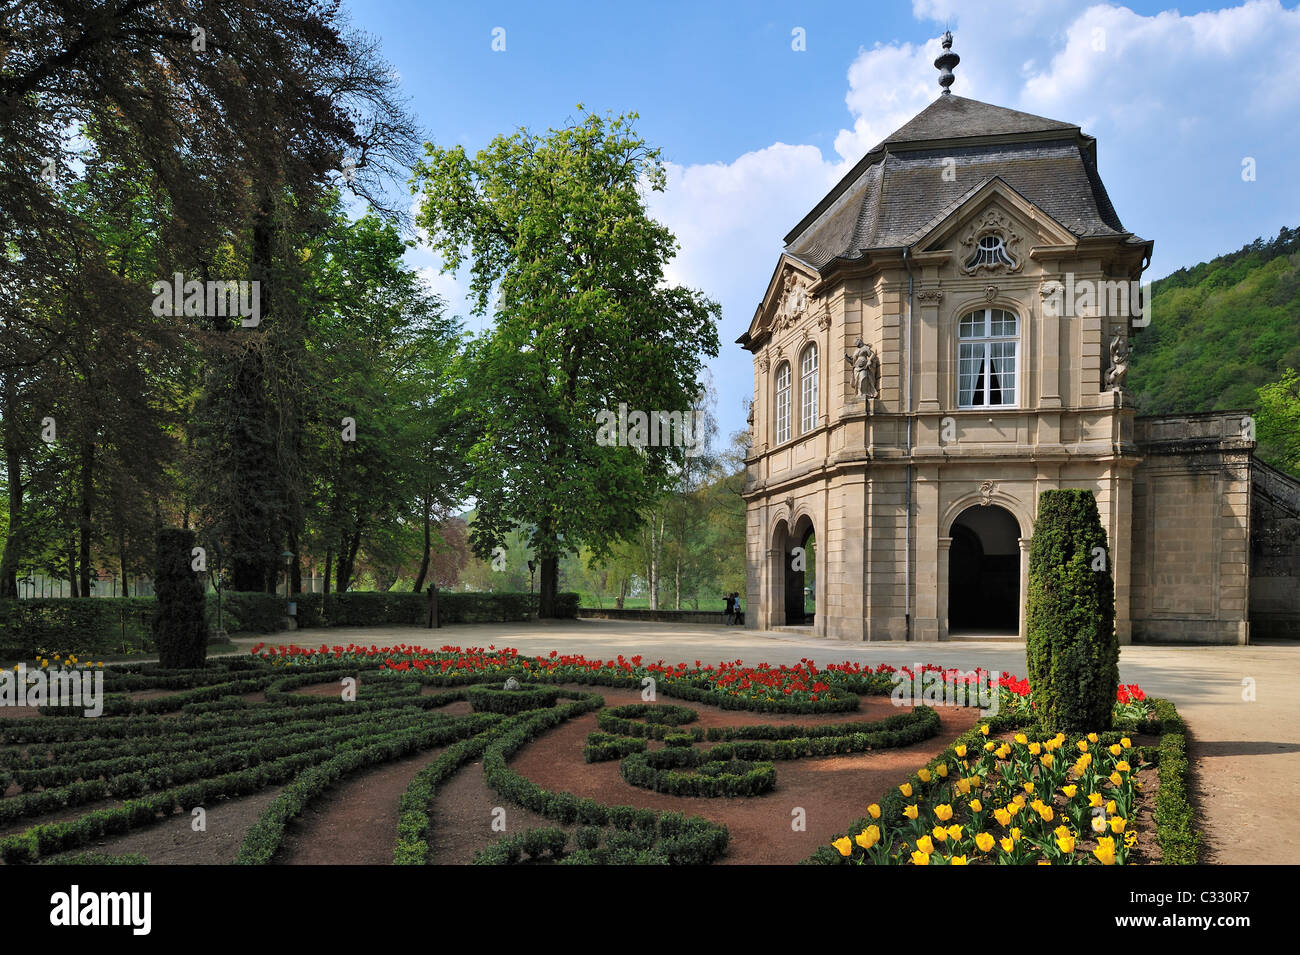 Le pavillon rococo et parc municipal à Echternach, Grand-duché de Luxembourg Banque D'Images